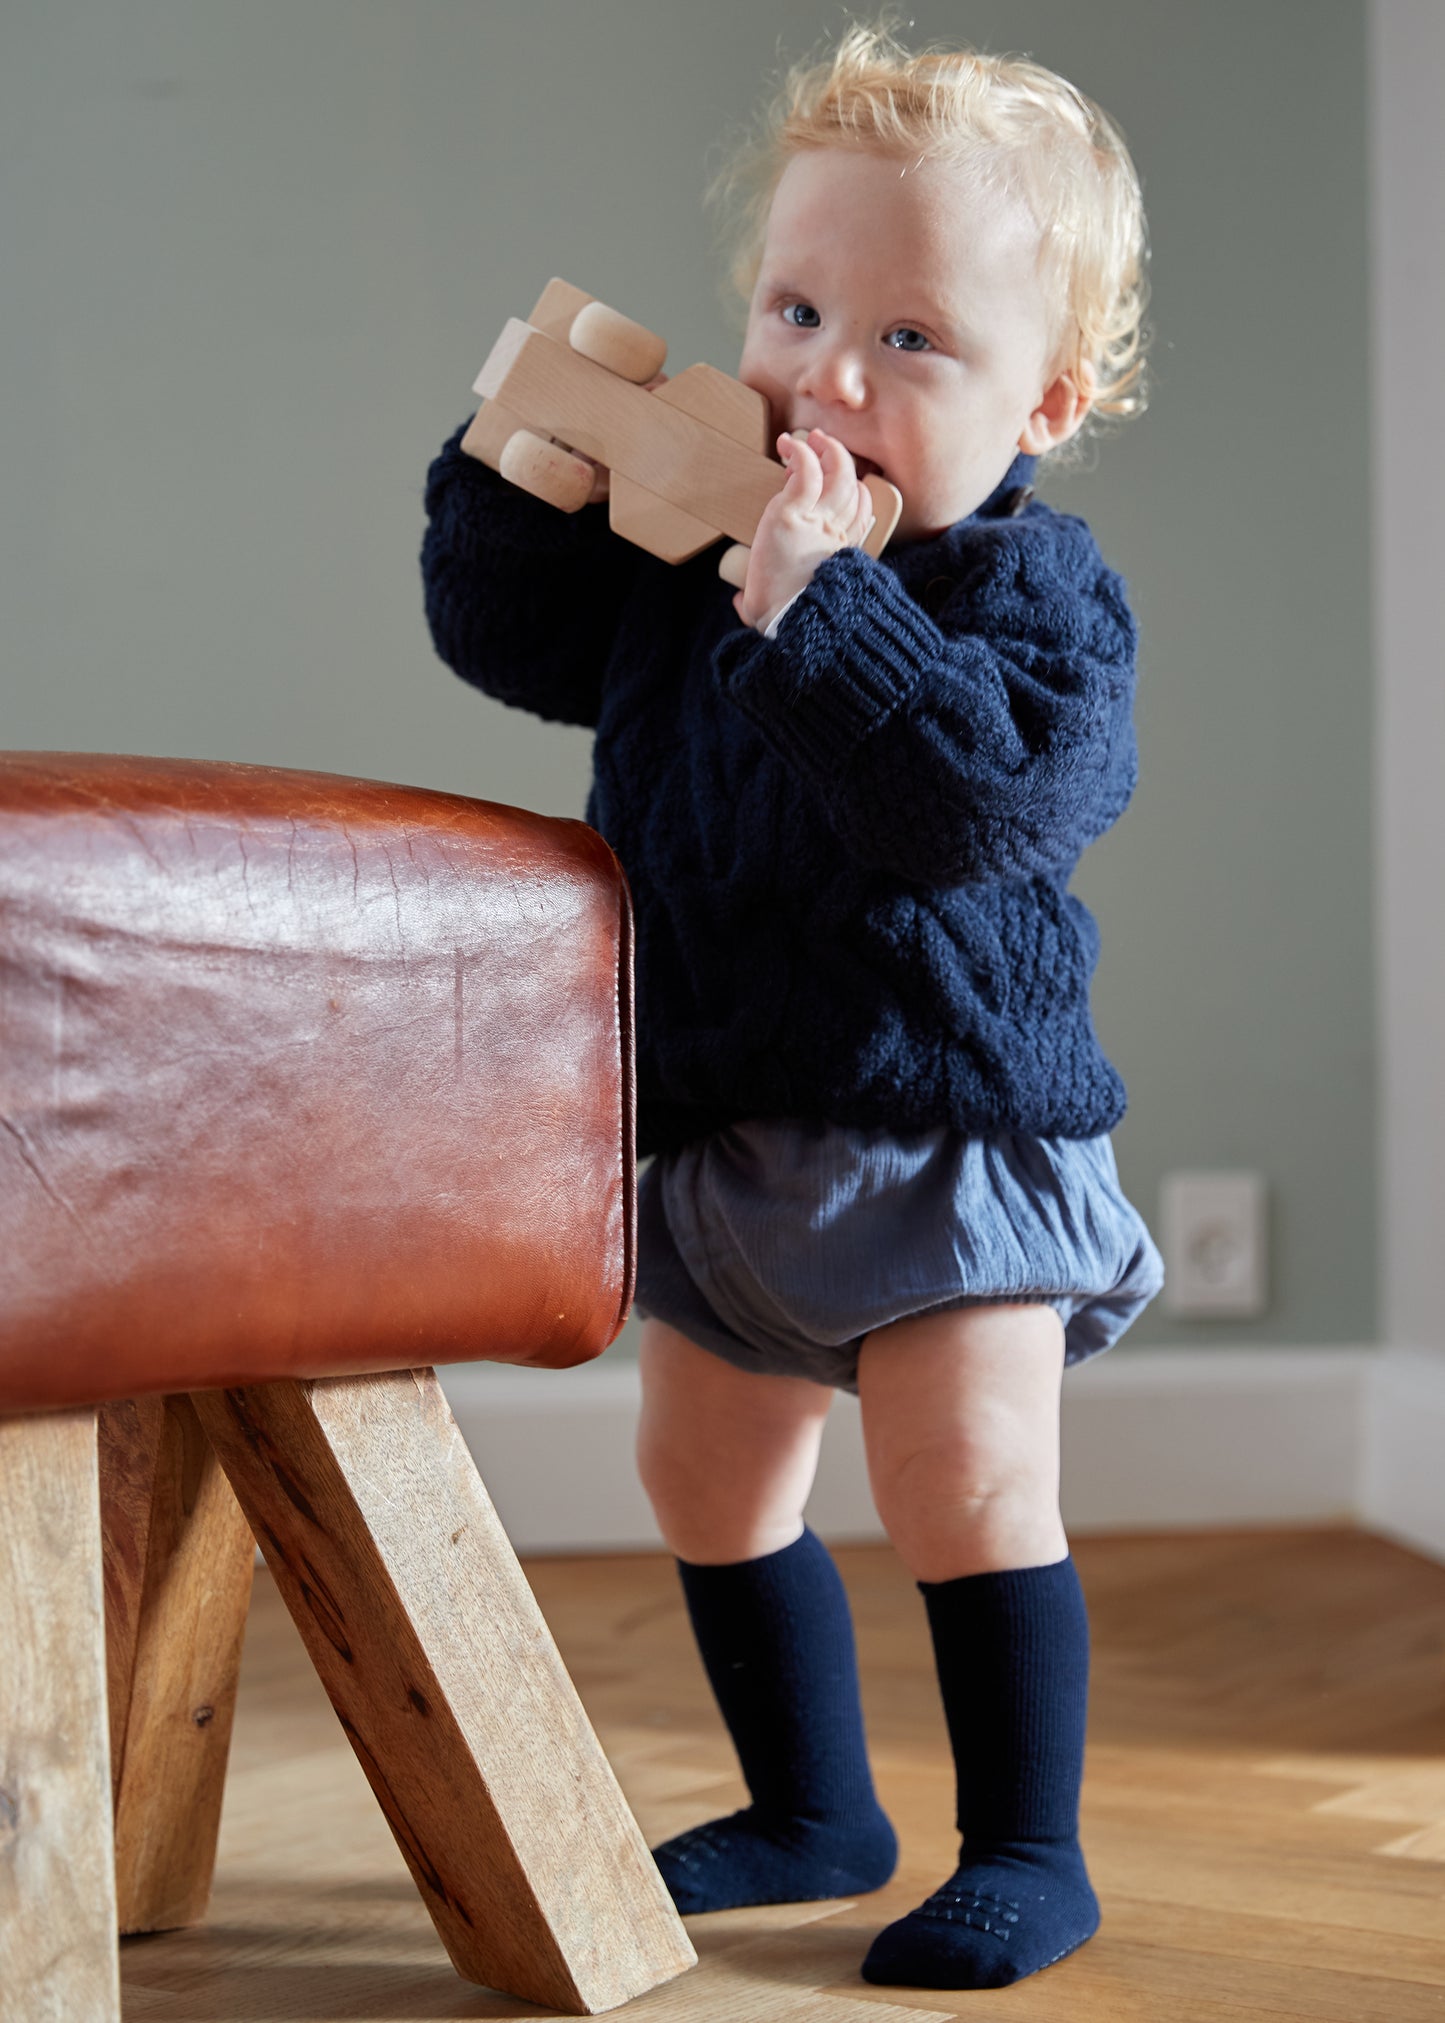 Antirutsch-Socken 'Navy Blue' - The Little One • Family.Concept.Store. 